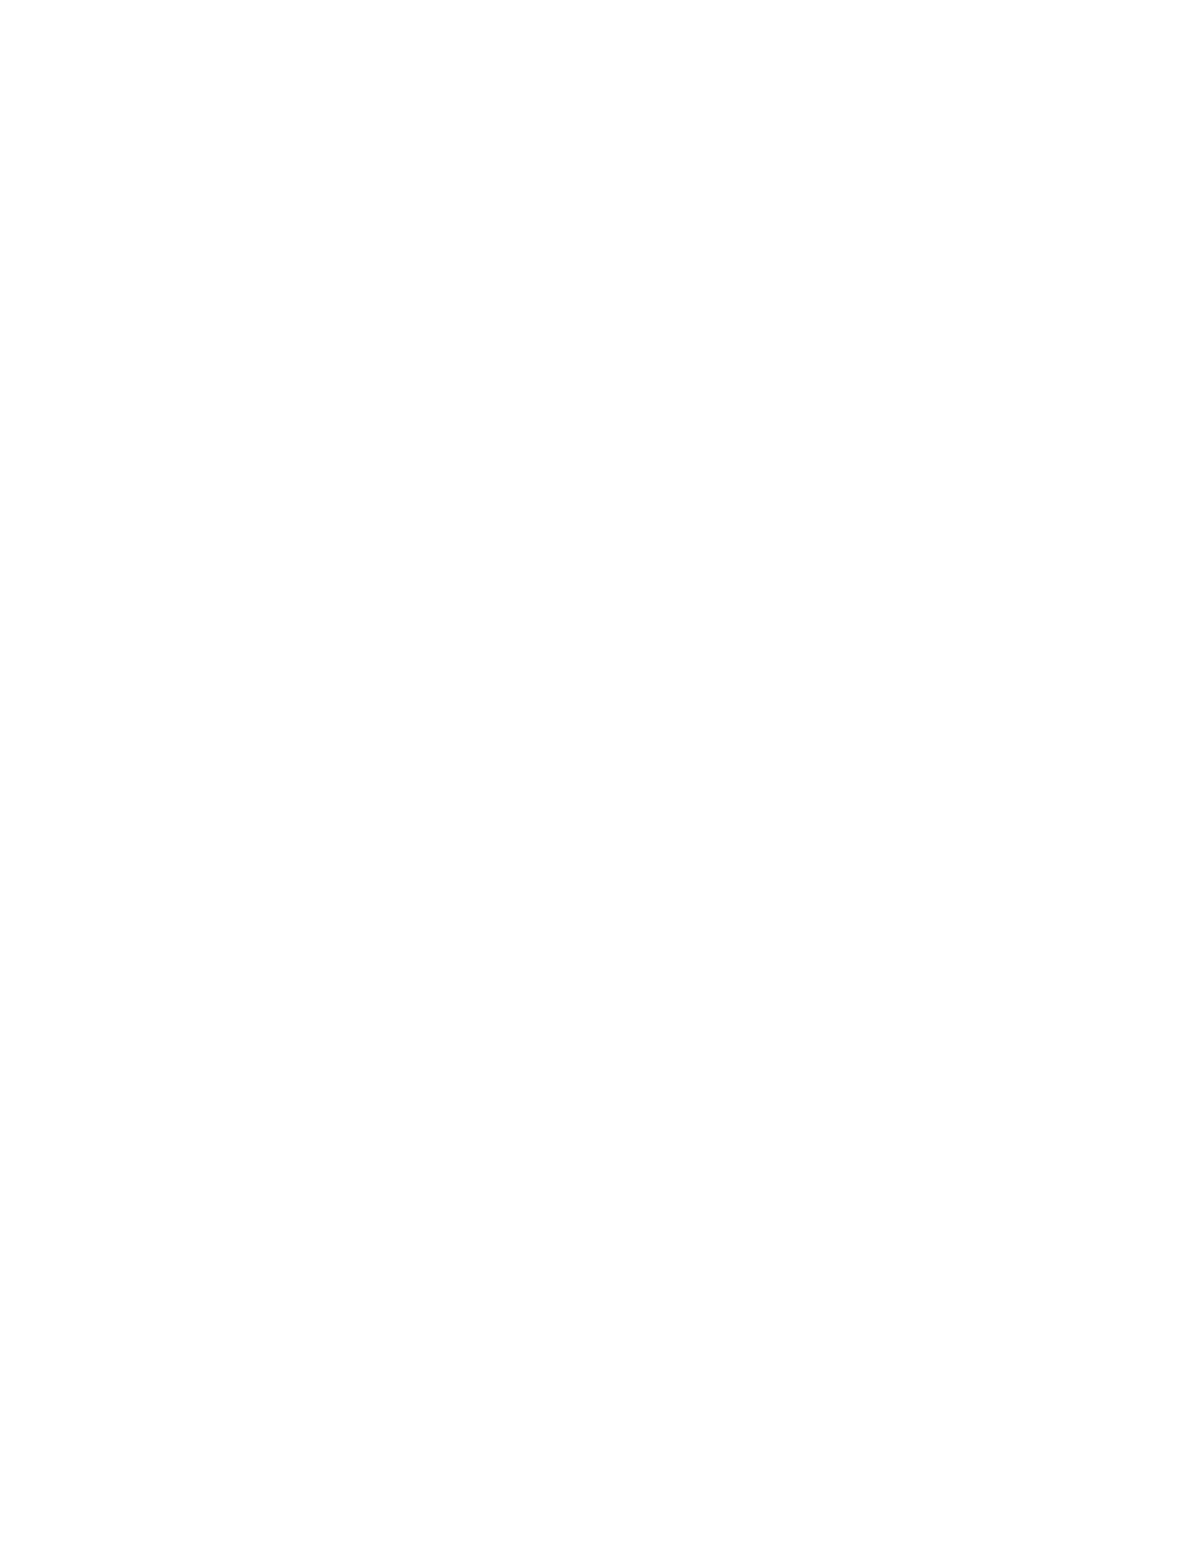 ETC 6 Meridian logo for dark backgrounds (transparent PNG)